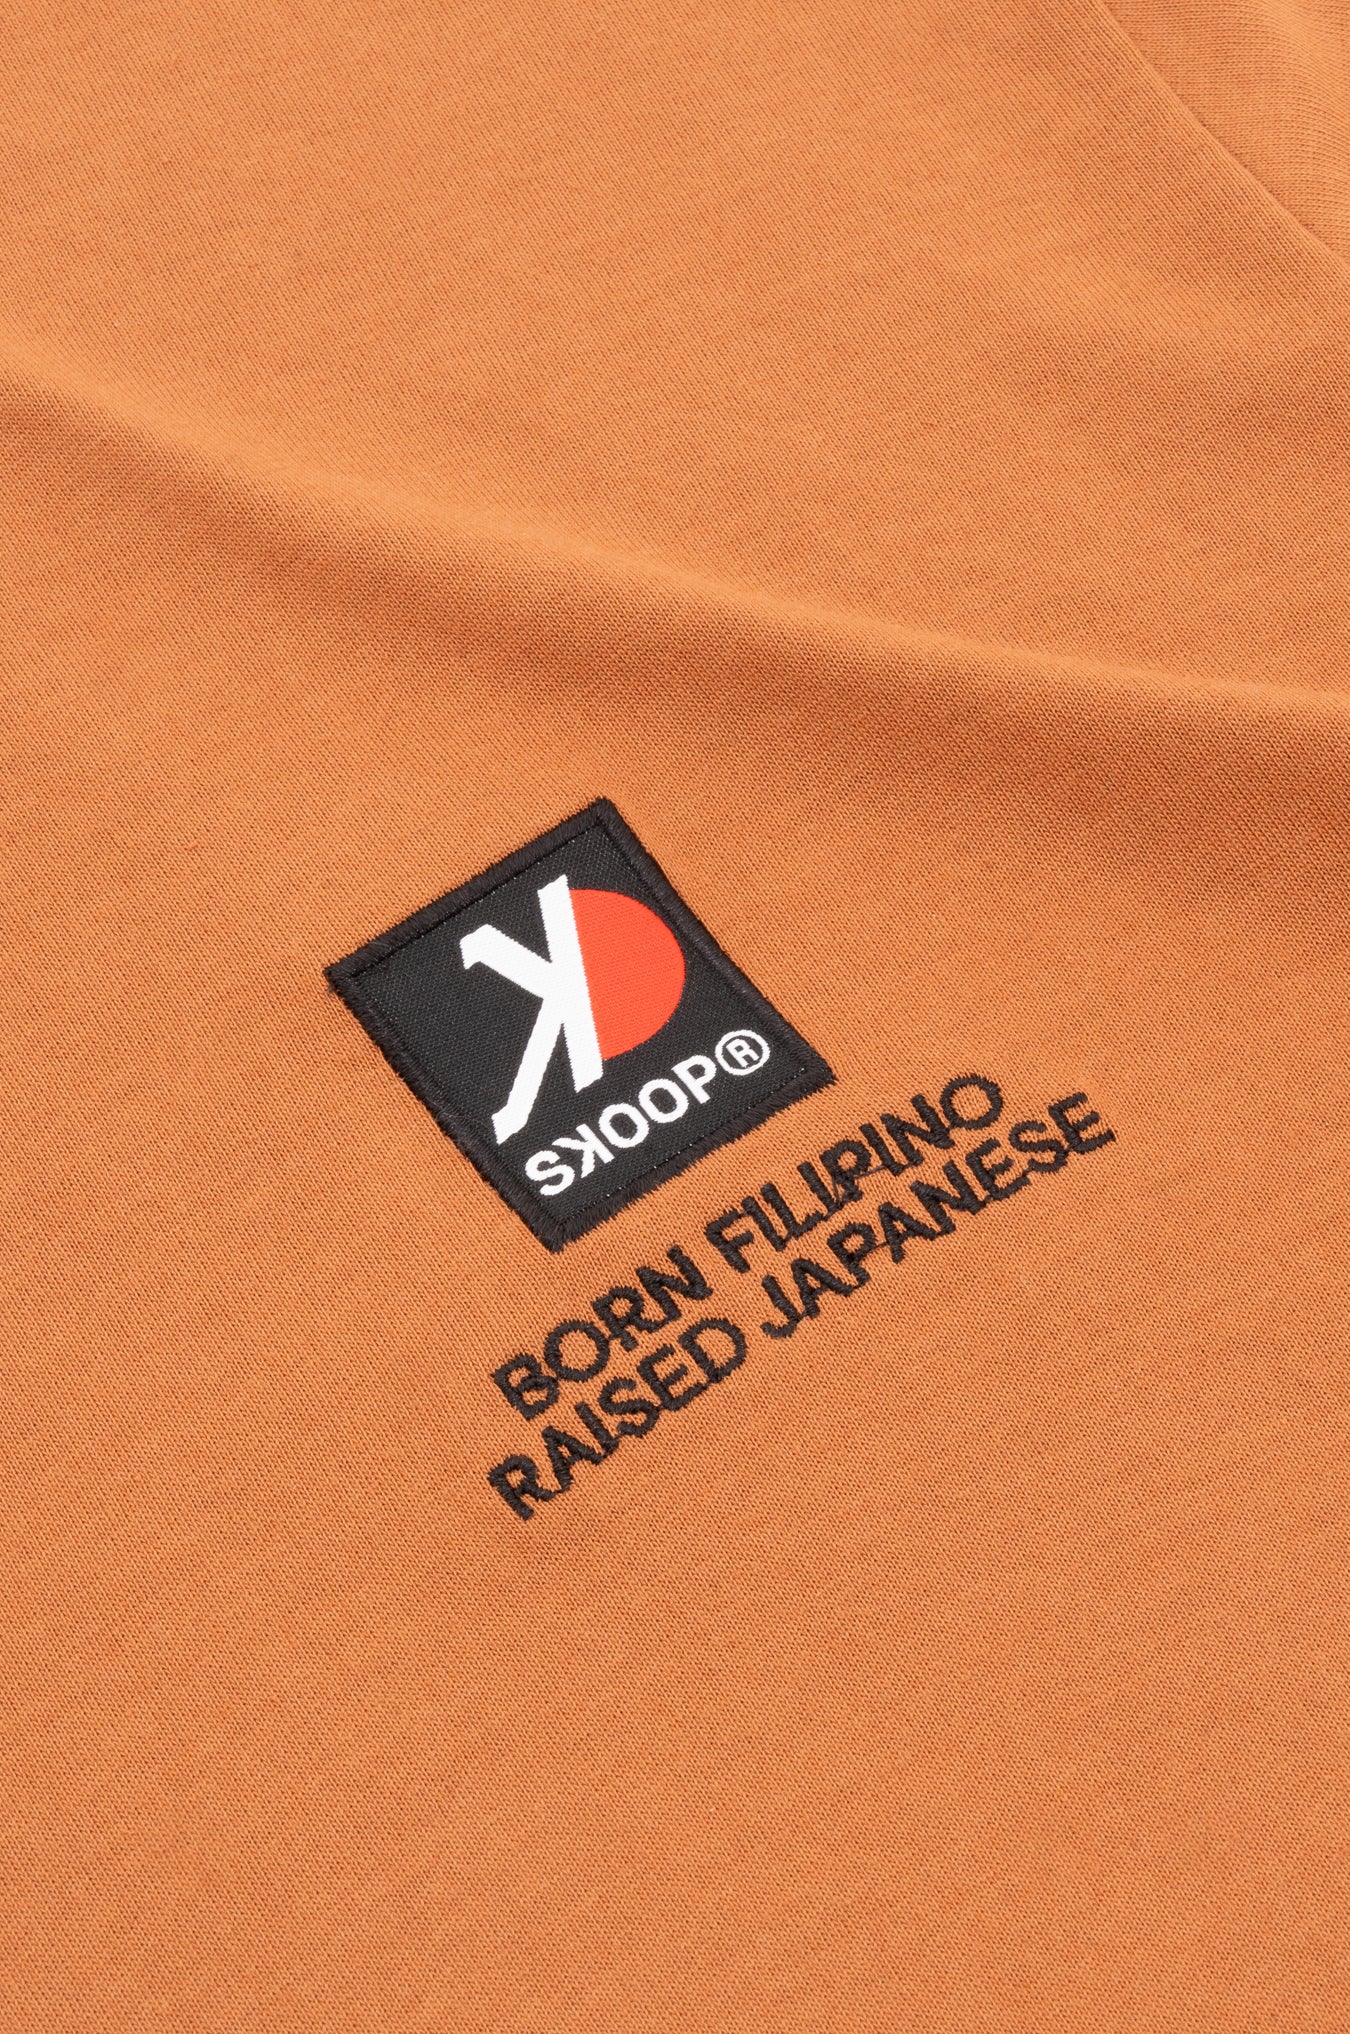 SKOOP® Evergreen Shirt Brown - SKOOP Kommunity